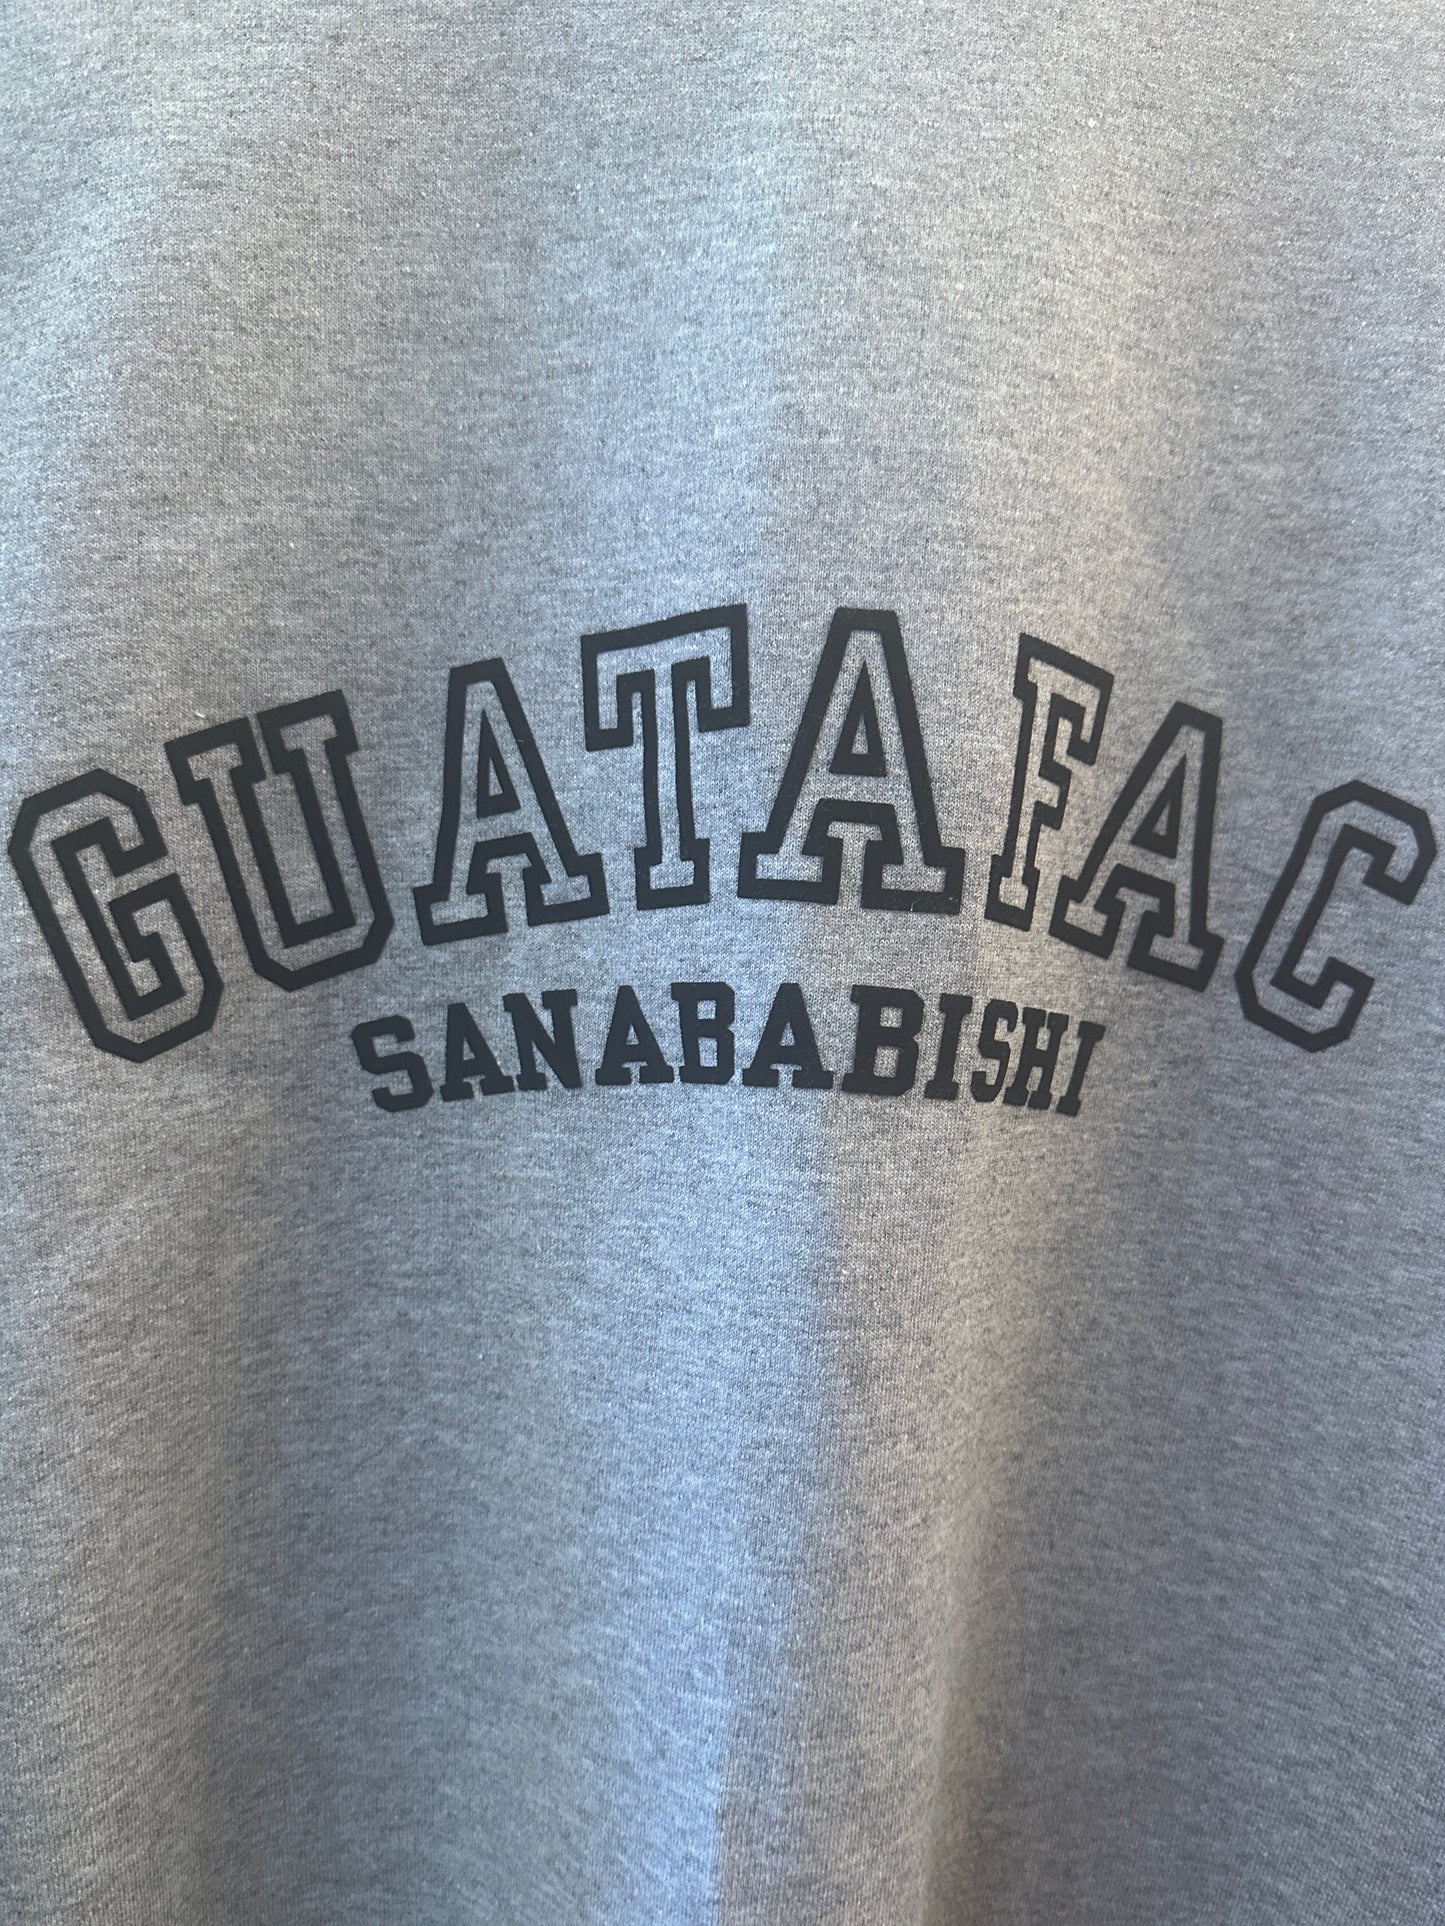 GUATAFAC Sanababishi Crew Neck Sweater